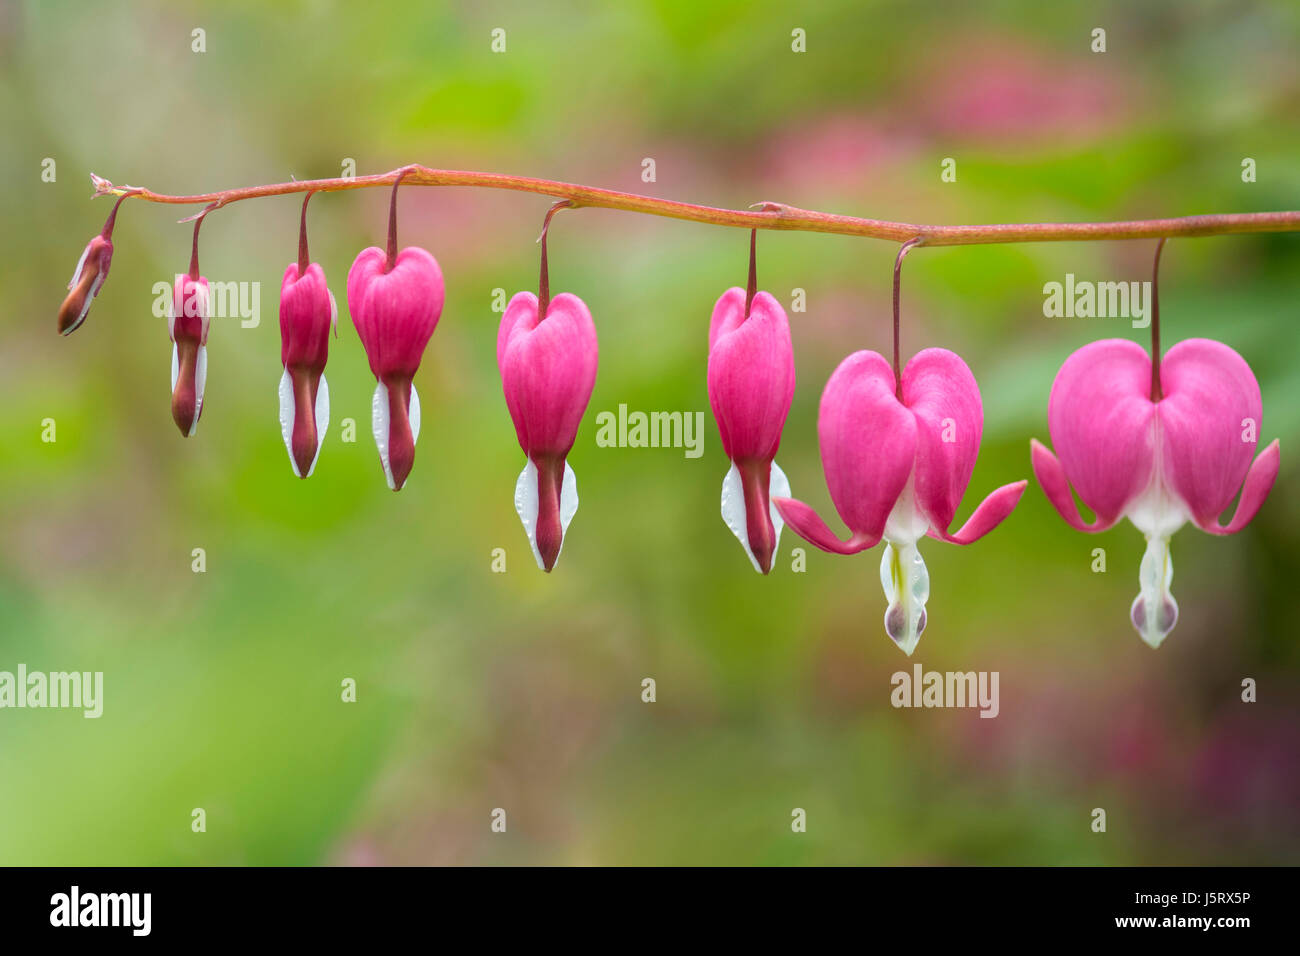 Lamprocapnos Spectabilis, Tränendes Herz rosa farbigen Blüten wachsen im Freien. Stockfoto